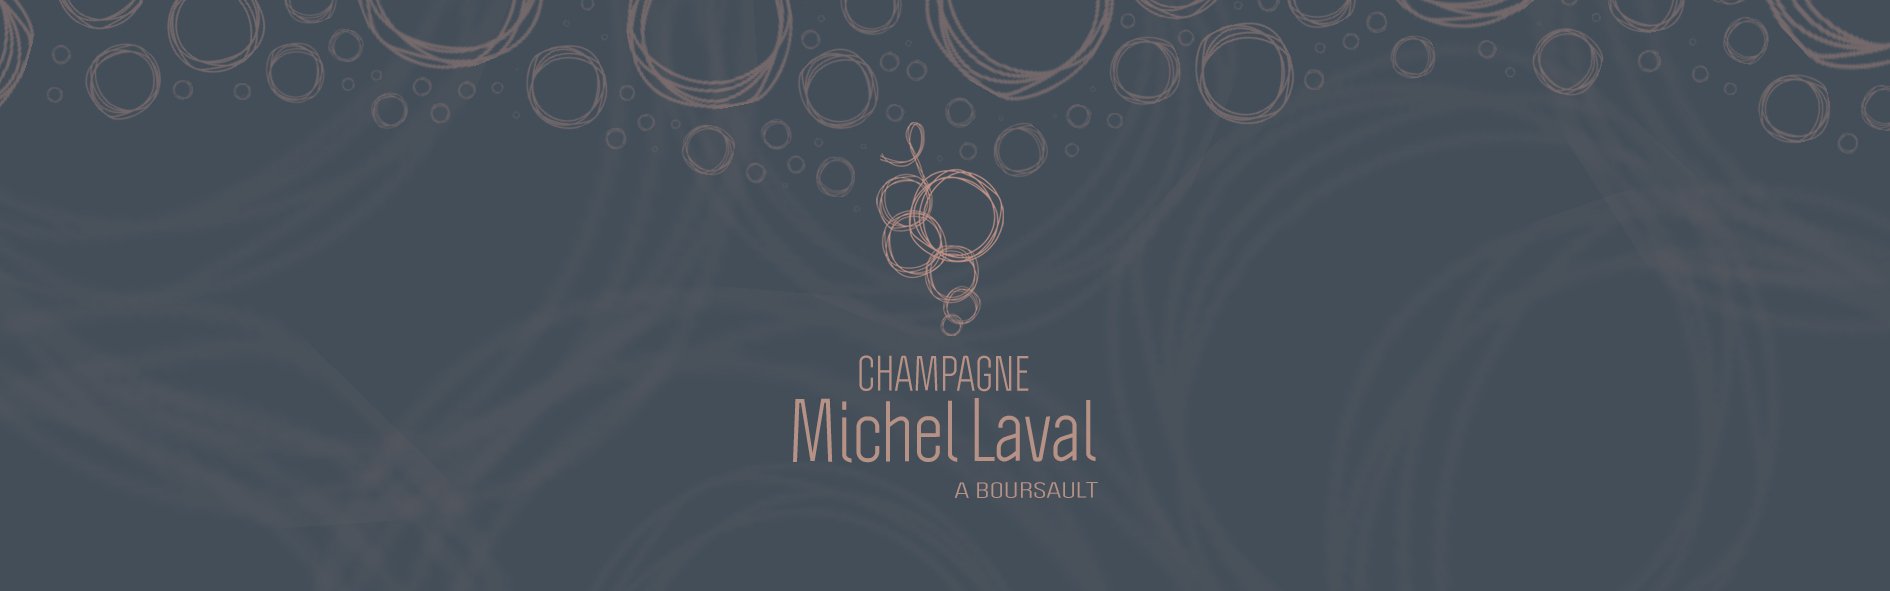 Michel Laval